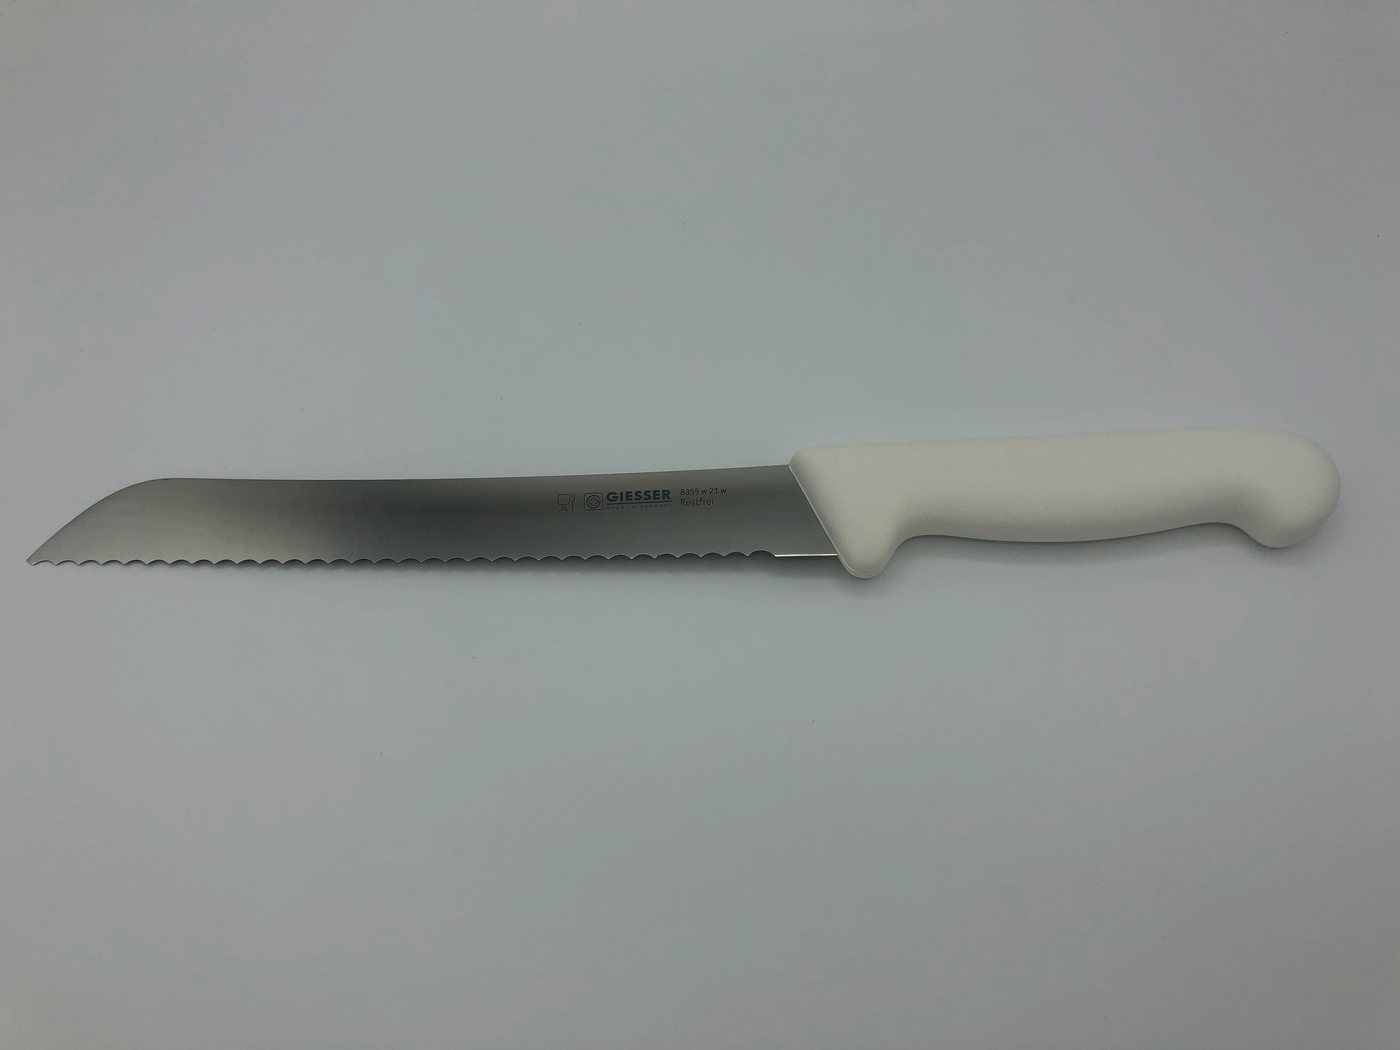 Giesser Messer Brotmesser Konditormesser 8355, Kunststoffgriff, 6 mm Welle, ideal zum Brot schneiden von Giesser Messer